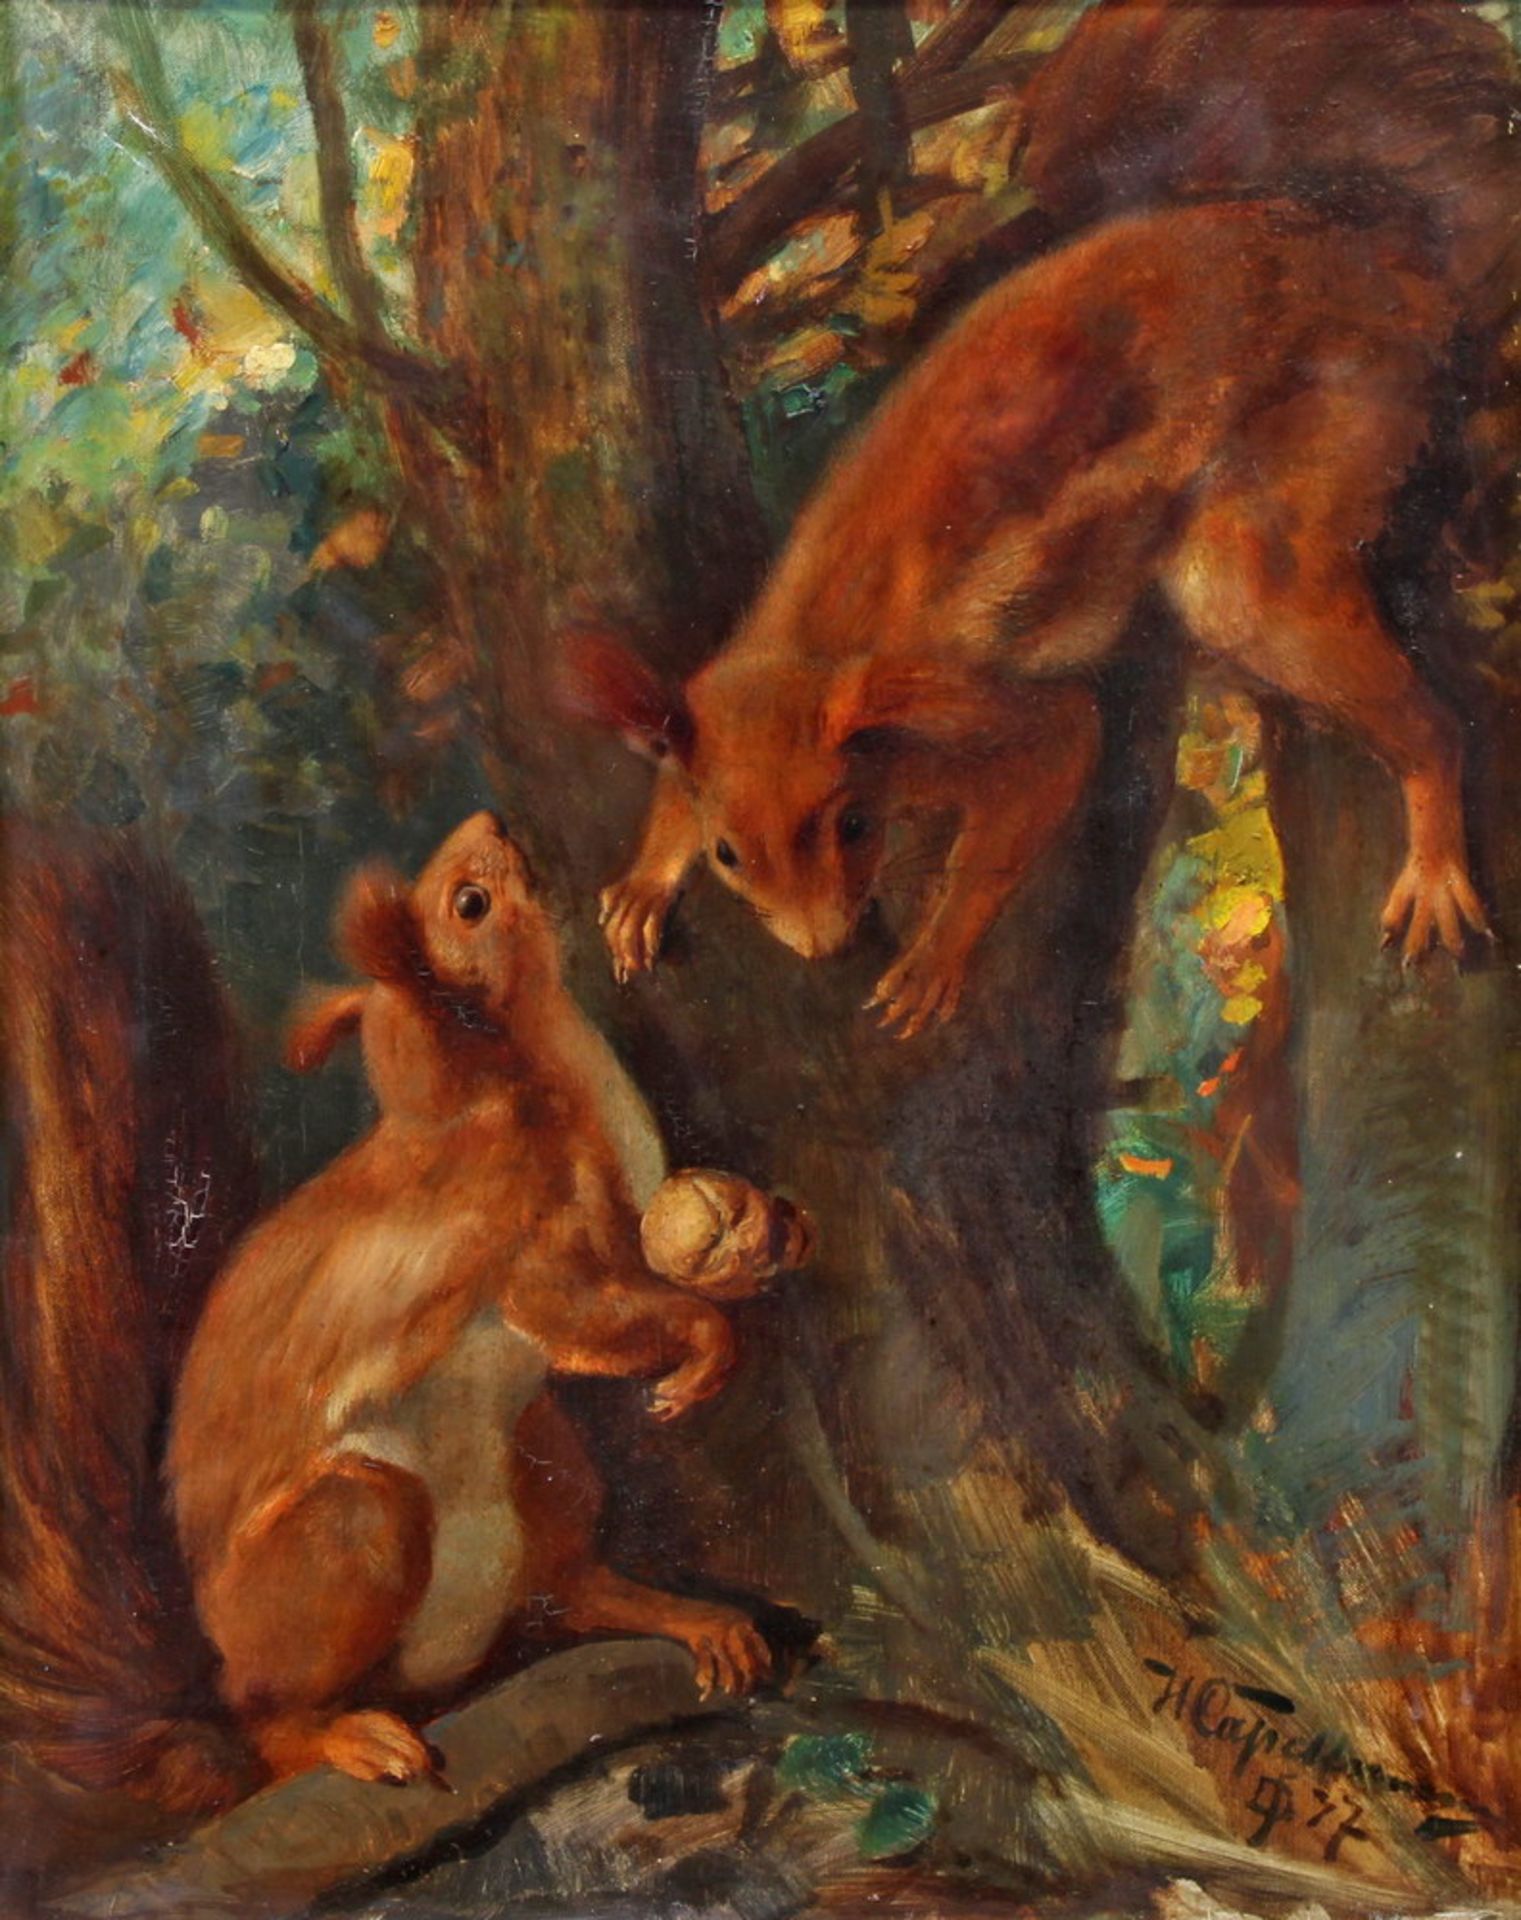 Capellmann, H. (19./20. Jh.), "Zwei Eichhörnchen", Öl auf Leinwand, signiert und datiert unten